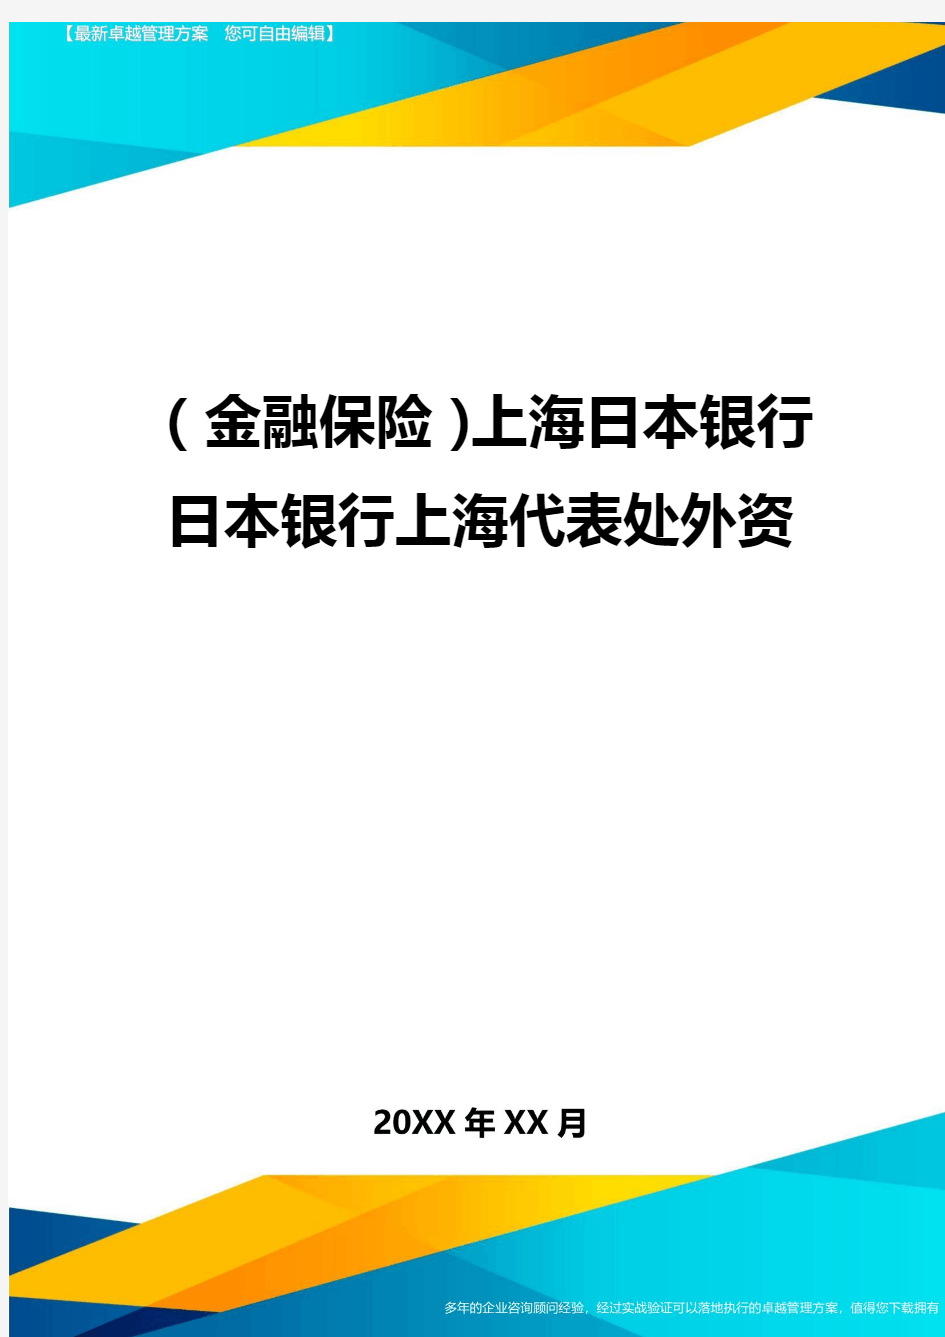 2020年(金融保险)上海日本银行日本银行上海代表处外资